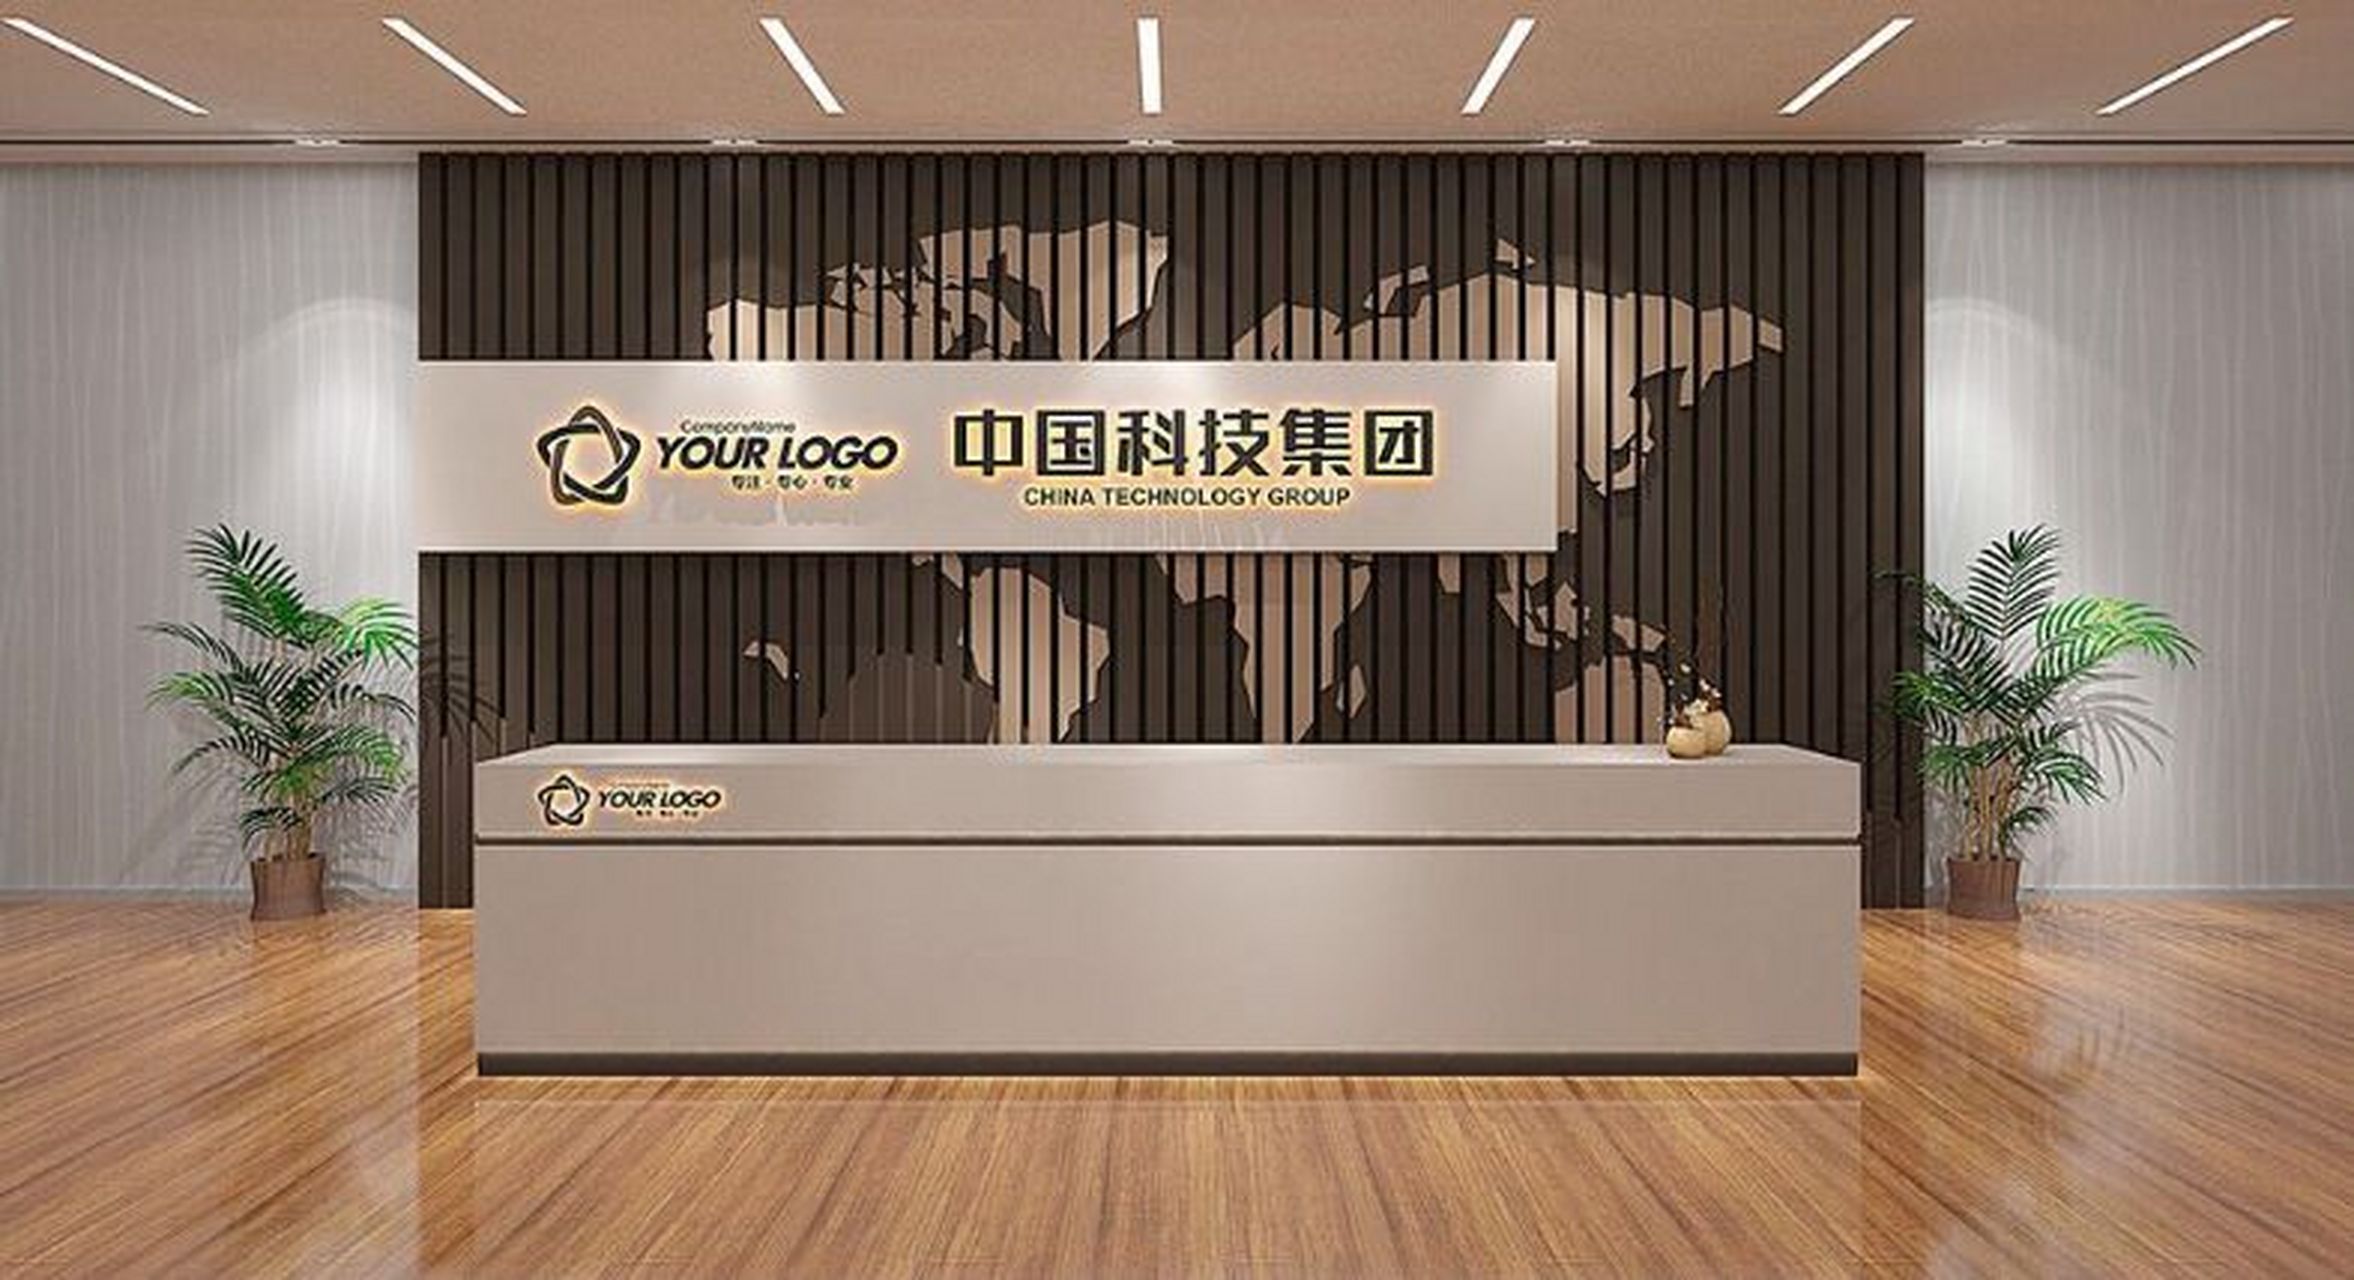 公司招牌前台logo标识制作,背发光字制作 重庆广告制作公司重庆文化墙